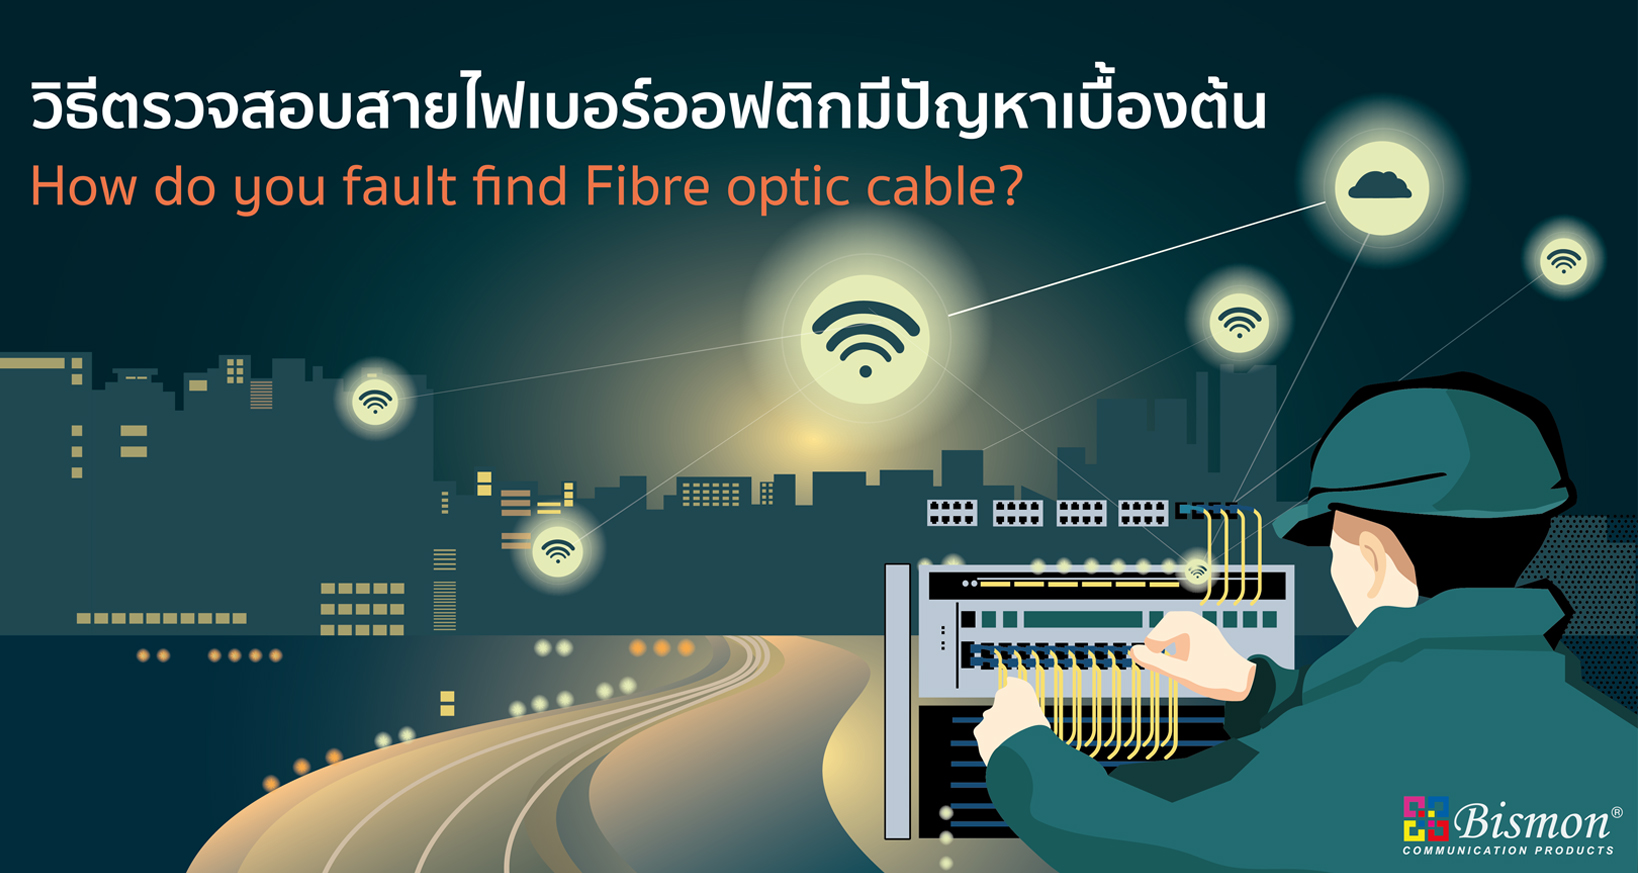 วิธีตรวจสอบสายไฟเบอร์ออฟติกมีปัญหาเบื้องต้น How do you fault find Fibre optic cable?